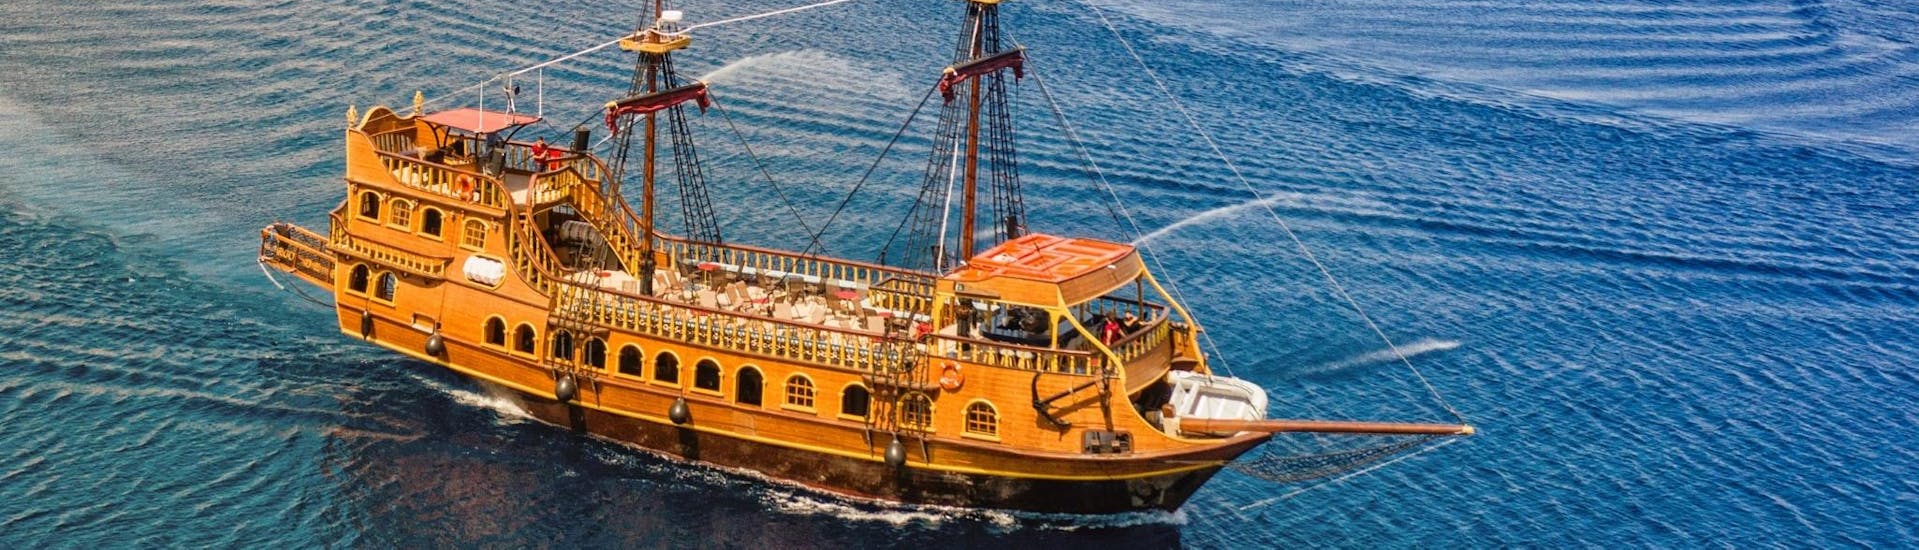 El elegante barco pirata navegando por el mar de Icaria durante un viaje en barco pirata desde Kos a Kalymnos, Pserimos y Plati con Barcos de Pirata.